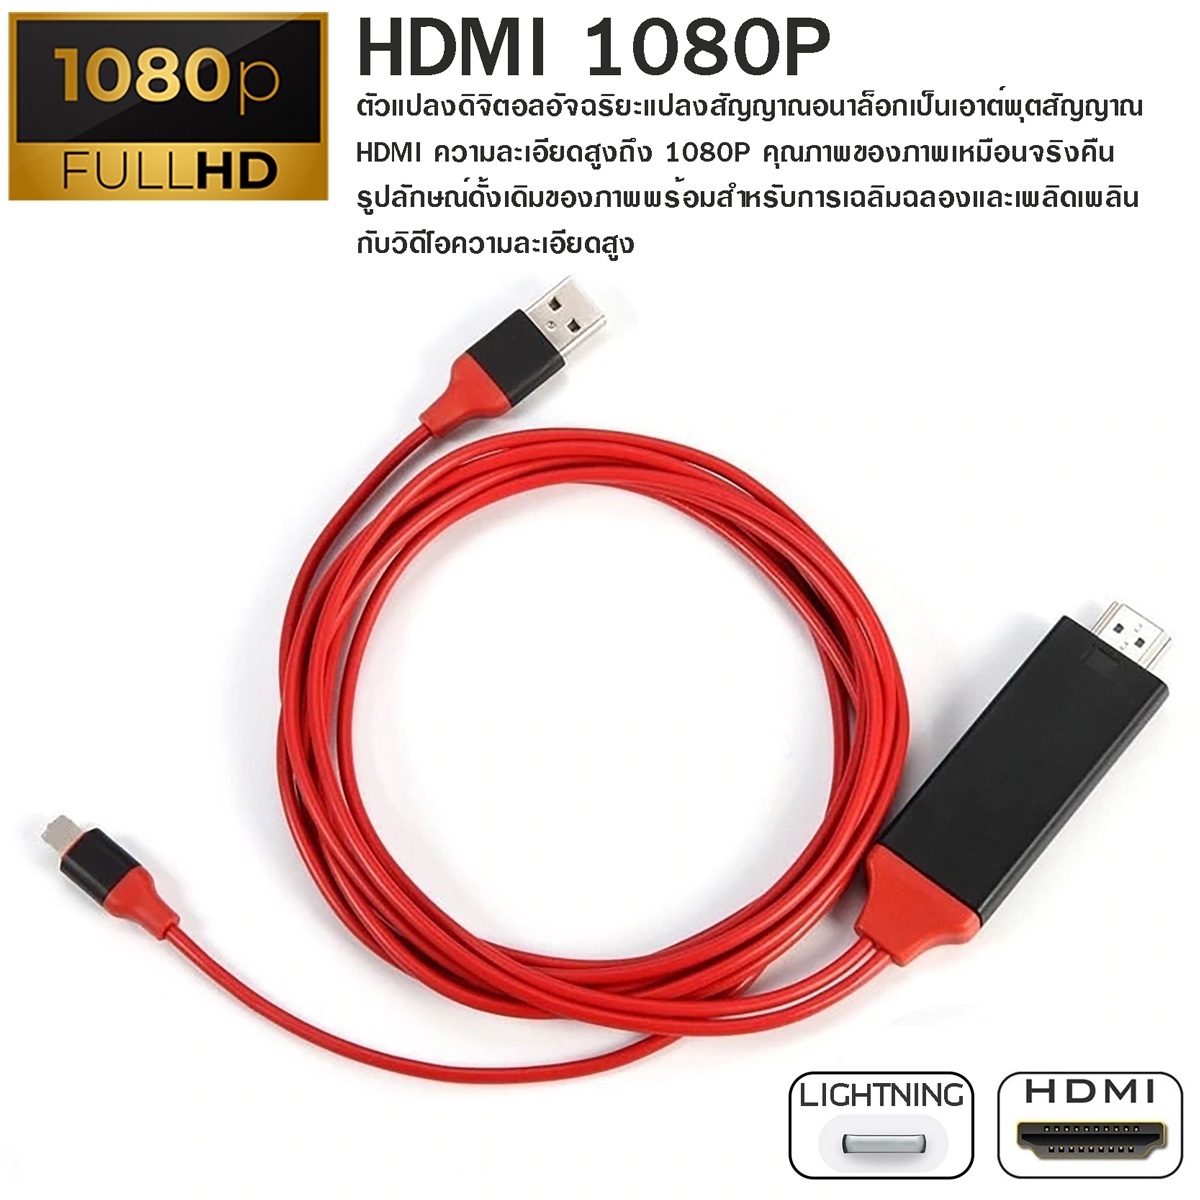 สายแปลงสัญญาณ Lightning to HDTV สายแปลง iPhone To HDMI TV มือถือ เชื่อมต่อกับทีวี 1080P